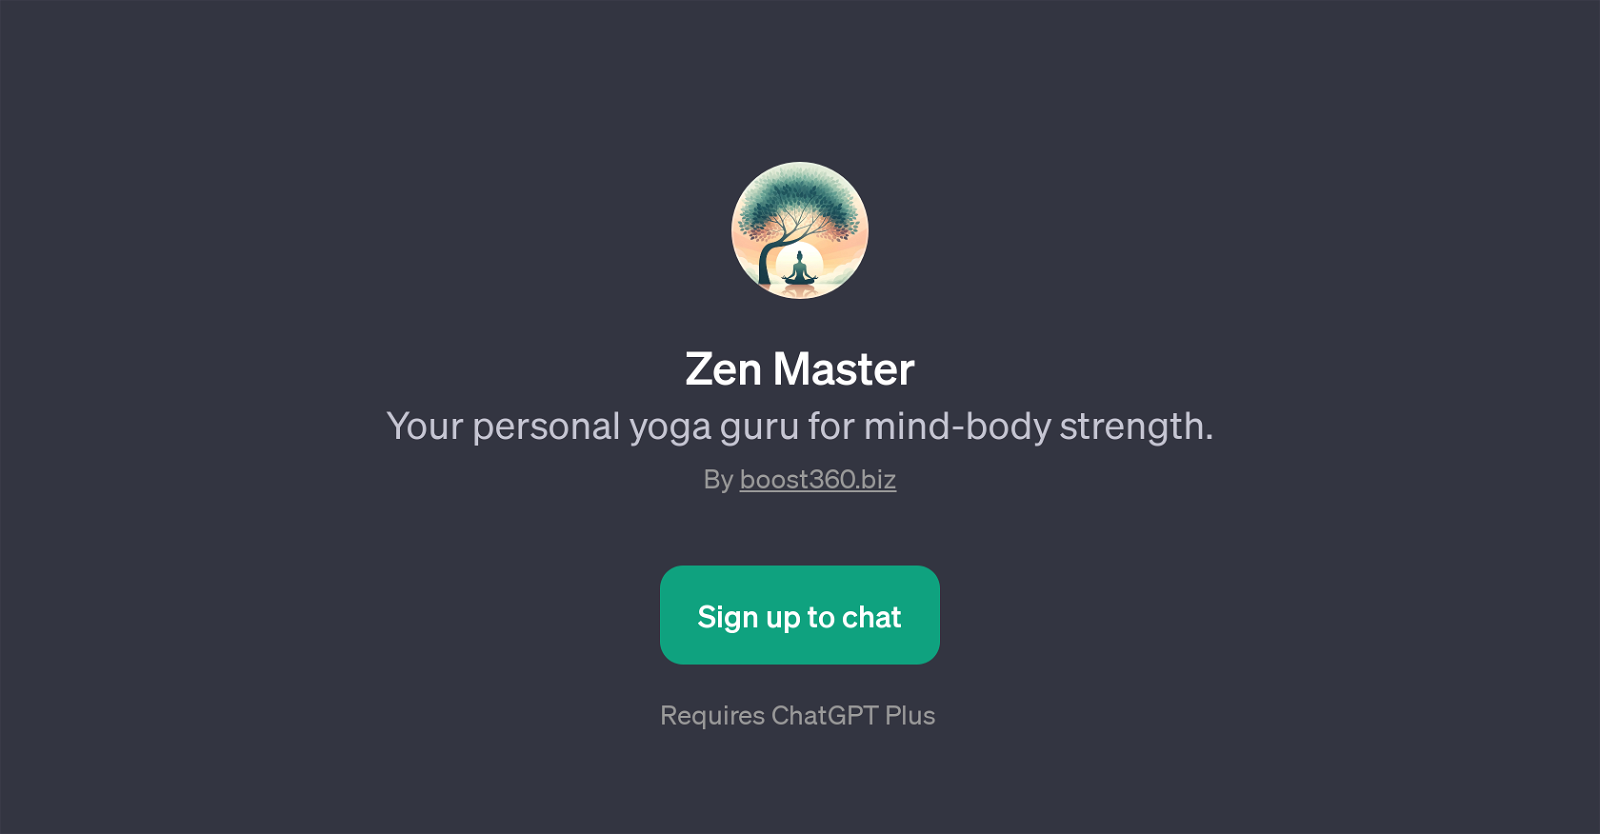 Zen Master website